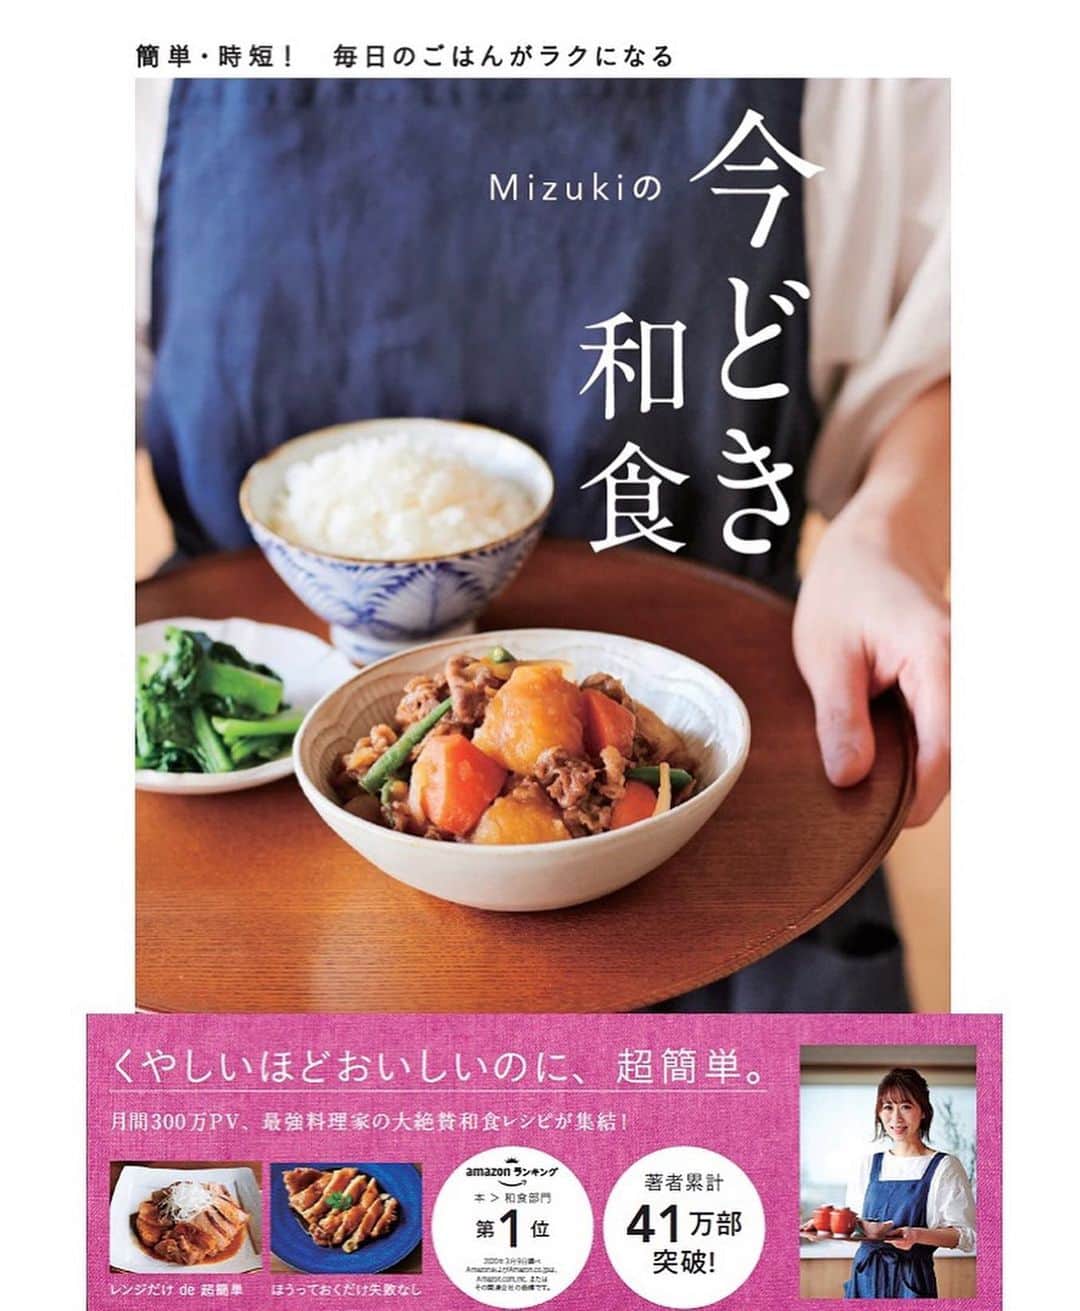 Mizuki【料理ブロガー・簡単レシピ】さんのインスタグラム写真 - (Mizuki【料理ブロガー・簡単レシピ】Instagram)「・﻿ 【#レシピ 】ーーーーーーーー﻿ ♡鶏肉と白菜のクリーム煮♡﻿ ーーーーーーーーーーーーーー﻿ ﻿ ﻿ ﻿ おはようございます(*^^*)﻿ ﻿ 今日ご紹介させていただくのは﻿ \\ 鶏肉と白菜のクリーム煮 //﻿ ﻿ バター&生クリームを使わずに﻿ しっかり濃厚に仕上げました♡﻿ しかも、フライパンひとつでできる﻿ 簡単お手軽レシピです(*´艸`)﻿ ﻿ このままはもちろん﻿ チーズをのせてグラタンにしたり﻿ ドリアにしてもおいしいですよ〜♩﻿ よかったらお試し下さいね(*^^*)﻿ ﻿ ﻿ ﻿ ＿＿＿＿＿＿＿＿＿＿＿＿＿＿＿＿＿＿＿＿﻿ 【2人分】﻿ 鶏もも肉...1枚(250g)﻿ 塩こしょう...少々﻿ 白菜...1/6個(250g)﻿ 玉ねぎ...1/4個﻿ サラダ油...小2﻿ 薄力粉...大1.5﻿ 牛乳...250ml﻿ ●コンソメ...大1/2﻿ ●粉チーズ...大1﻿ ﻿ 1.鶏肉は3cm大に切って塩こしょうを振る。白菜の芯は1cm幅、葉はざく切りにする。玉ねぎは薄切りにする。﻿ 2.フライパンにサラダ油を中火で熱し、鶏肉を両面焼き色が付くまで焼く。続けて白菜と玉ねぎを加えてしんなりするまで炒める。﻿ 3.薄力粉を加え、弱めの中火で1分炒める。粉っぽさがなくなったら牛乳を3回に分けて加え、その都度よく混ぜる。﻿ 4.仕上げに●を加え、とろみが付くまで2分程煮る。﻿ ￣￣￣￣￣￣￣￣￣￣￣￣￣￣￣￣￣￣￣￣﻿ ﻿ ﻿ ﻿ ﻿ 《ポイント》﻿ ♦︎鶏肉は両面しっかり焼き色が付くまで焼いて下さい♩﻿ ♦︎粉を加えたら焦げやすくなるので火加減を落として炒めて下さい♩﻿ ﻿ ﻿ ﻿ ﻿ ﻿ ﻿ ﻿ ﻿ 📕新刊発売中📕﻿ 【ラクしておいしい！#1品晩ごはん 】﻿ ￣￣￣￣￣￣￣￣￣￣￣￣￣￣￣￣￣﻿ 私たちだってヘトヘトな日がある•••﻿ 毎日何品も作っていられない•••﻿ もうごはんに悩みたくない😢﻿ そんな時、1品ごはんはいかがでしょう？﻿ というご提案です✨﻿ ﻿ 【1品ごはん】は﻿ 副菜いらずで全てがシンプル！﻿ ￣￣￣￣￣￣￣￣￣￣￣￣￣￣￣￣￣￣﻿ 一品つくるだけでいいから﻿ 献立を考えなくてよし！﻿ ￣￣￣￣￣￣￣￣￣￣￣￣￣￣￣￣￣￣﻿ 悩まない、疲れない、﻿ 気力や時間がなくてもなんとかなる！﻿ ￣￣￣￣￣￣￣￣￣￣￣￣￣￣￣￣￣￣﻿ そんな頼りになる﻿ 便利なお助けごはんです☺️💕﻿ (ハイライトに🔗貼っています✨)﻿ ￣￣￣￣￣￣￣￣￣￣￣￣￣￣￣￣￣﻿ ﻿ ﻿ ﻿ ﻿ ﻿ ⭐️発売中⭐️﻿ ＿＿＿＿＿＿＿＿＿＿＿＿＿＿＿＿＿＿﻿ しんどくない献立、考えました♩﻿ \15分でいただきます/﻿ 📕#Mizukiの2品献立 📕﻿ ﻿ 和食をもっとカジュアルに♩﻿ \毎日のごはんがラクになる/﻿ 📘#Mizukiの今どき和食 📘﻿ ﻿ ホケミレシピの決定版♩﻿ \はじめてでも失敗しない/﻿ 📙#ホットケーキミックスのお菓子 📙﻿ ﻿ NHKまる得マガジンテキスト☆﻿ ホットケーキミックスで﻿ 📗絶品おやつ&意外なランチ📗﻿ ￣￣￣￣￣￣￣￣￣￣￣￣￣￣￣￣￣￣﻿ ﻿ ﻿ ﻿ ＿＿＿＿＿＿＿＿＿＿＿＿＿＿＿＿＿＿﻿ レシピを作って下さった際や﻿ レシピ本についてのご投稿には﻿ タグ付け( @mizuki_31cafe )して﻿ お知らせいただけると嬉しいです😊💕﻿ ￣￣￣￣￣￣￣￣￣￣￣￣￣￣￣￣￣￣﻿ ﻿ ﻿ ﻿ ﻿ #鶏肉#白菜#クリーム煮#生クリームなし#バターなし#Mizuki#簡単レシピ#時短レシピ#節約レシピ#料理#フーディーテーブル#マカロニメイト#おうちごはん#デリスタグラマー#料理好きな人と繋がりたい#おうちごはんlover#写真好きな人と繋がりたい#foodpic#cooking#recipe#lin_stagrammer#foodporn#yummy#f52grams#鶏肉と白菜のクリーム煮m」1月6日 6時57分 - mizuki_31cafe